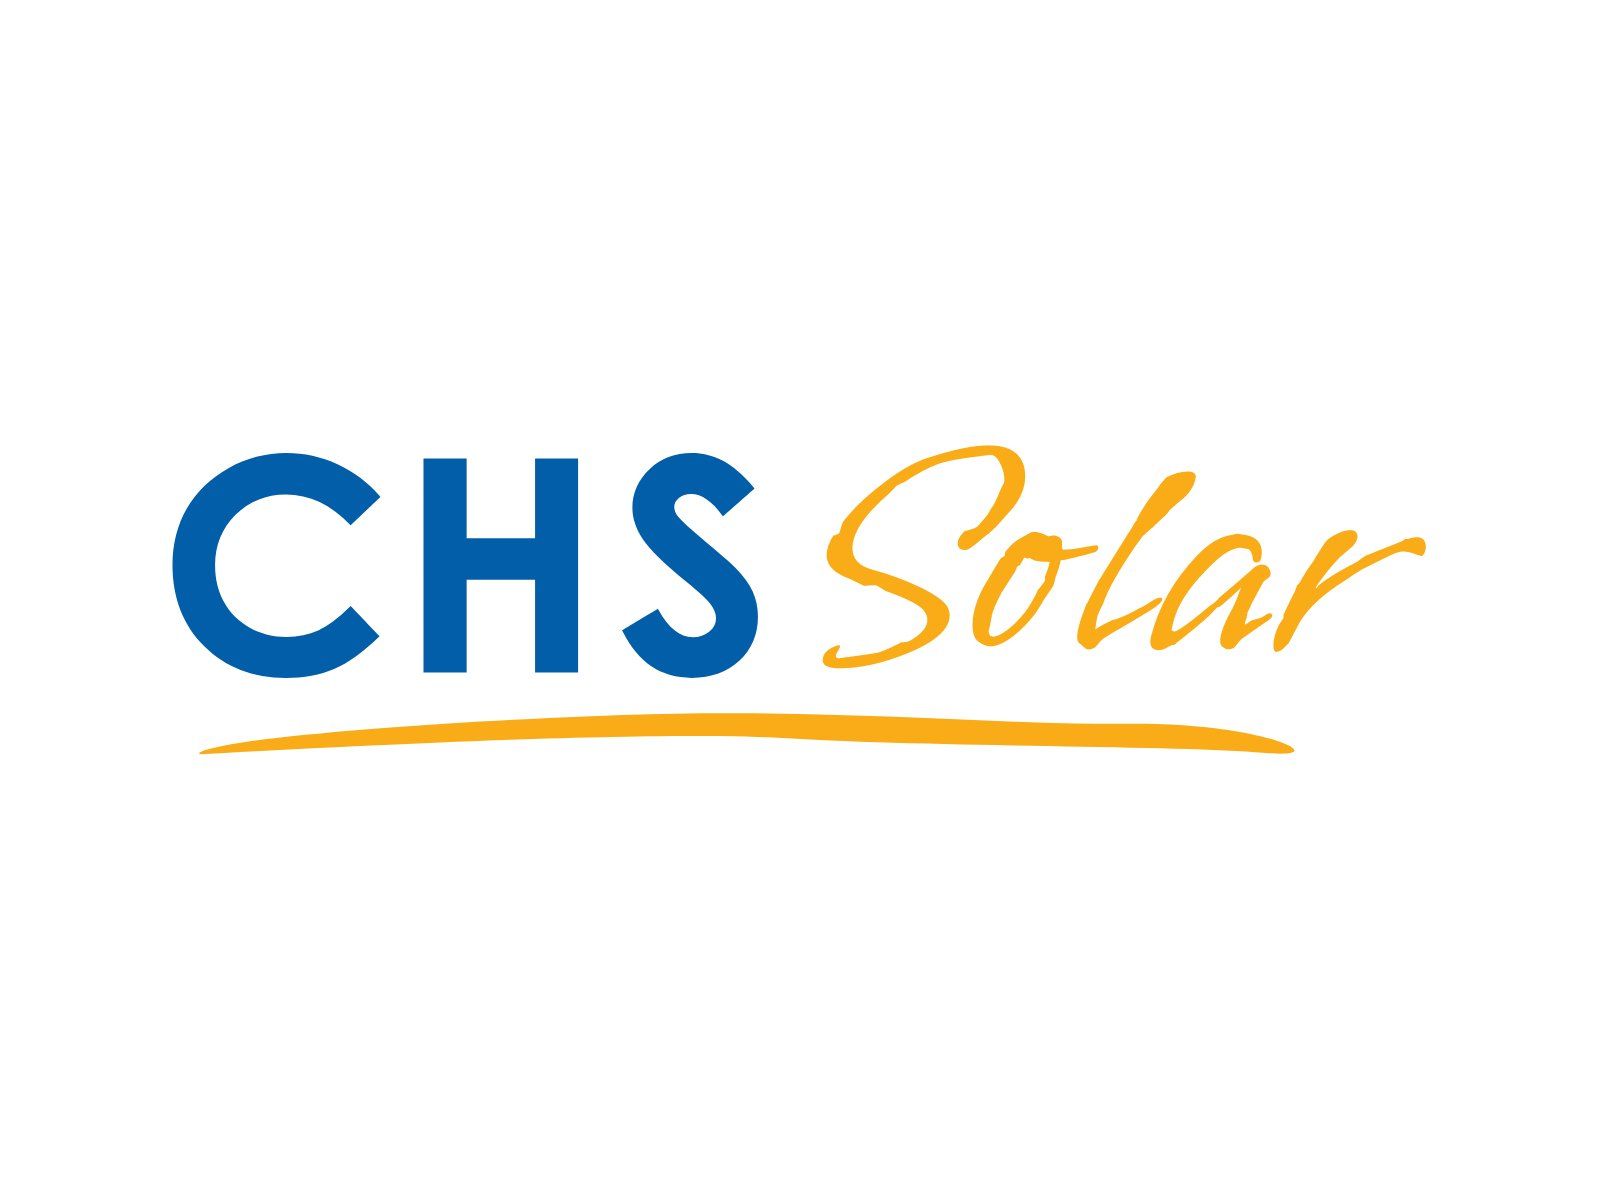 chs solar logo